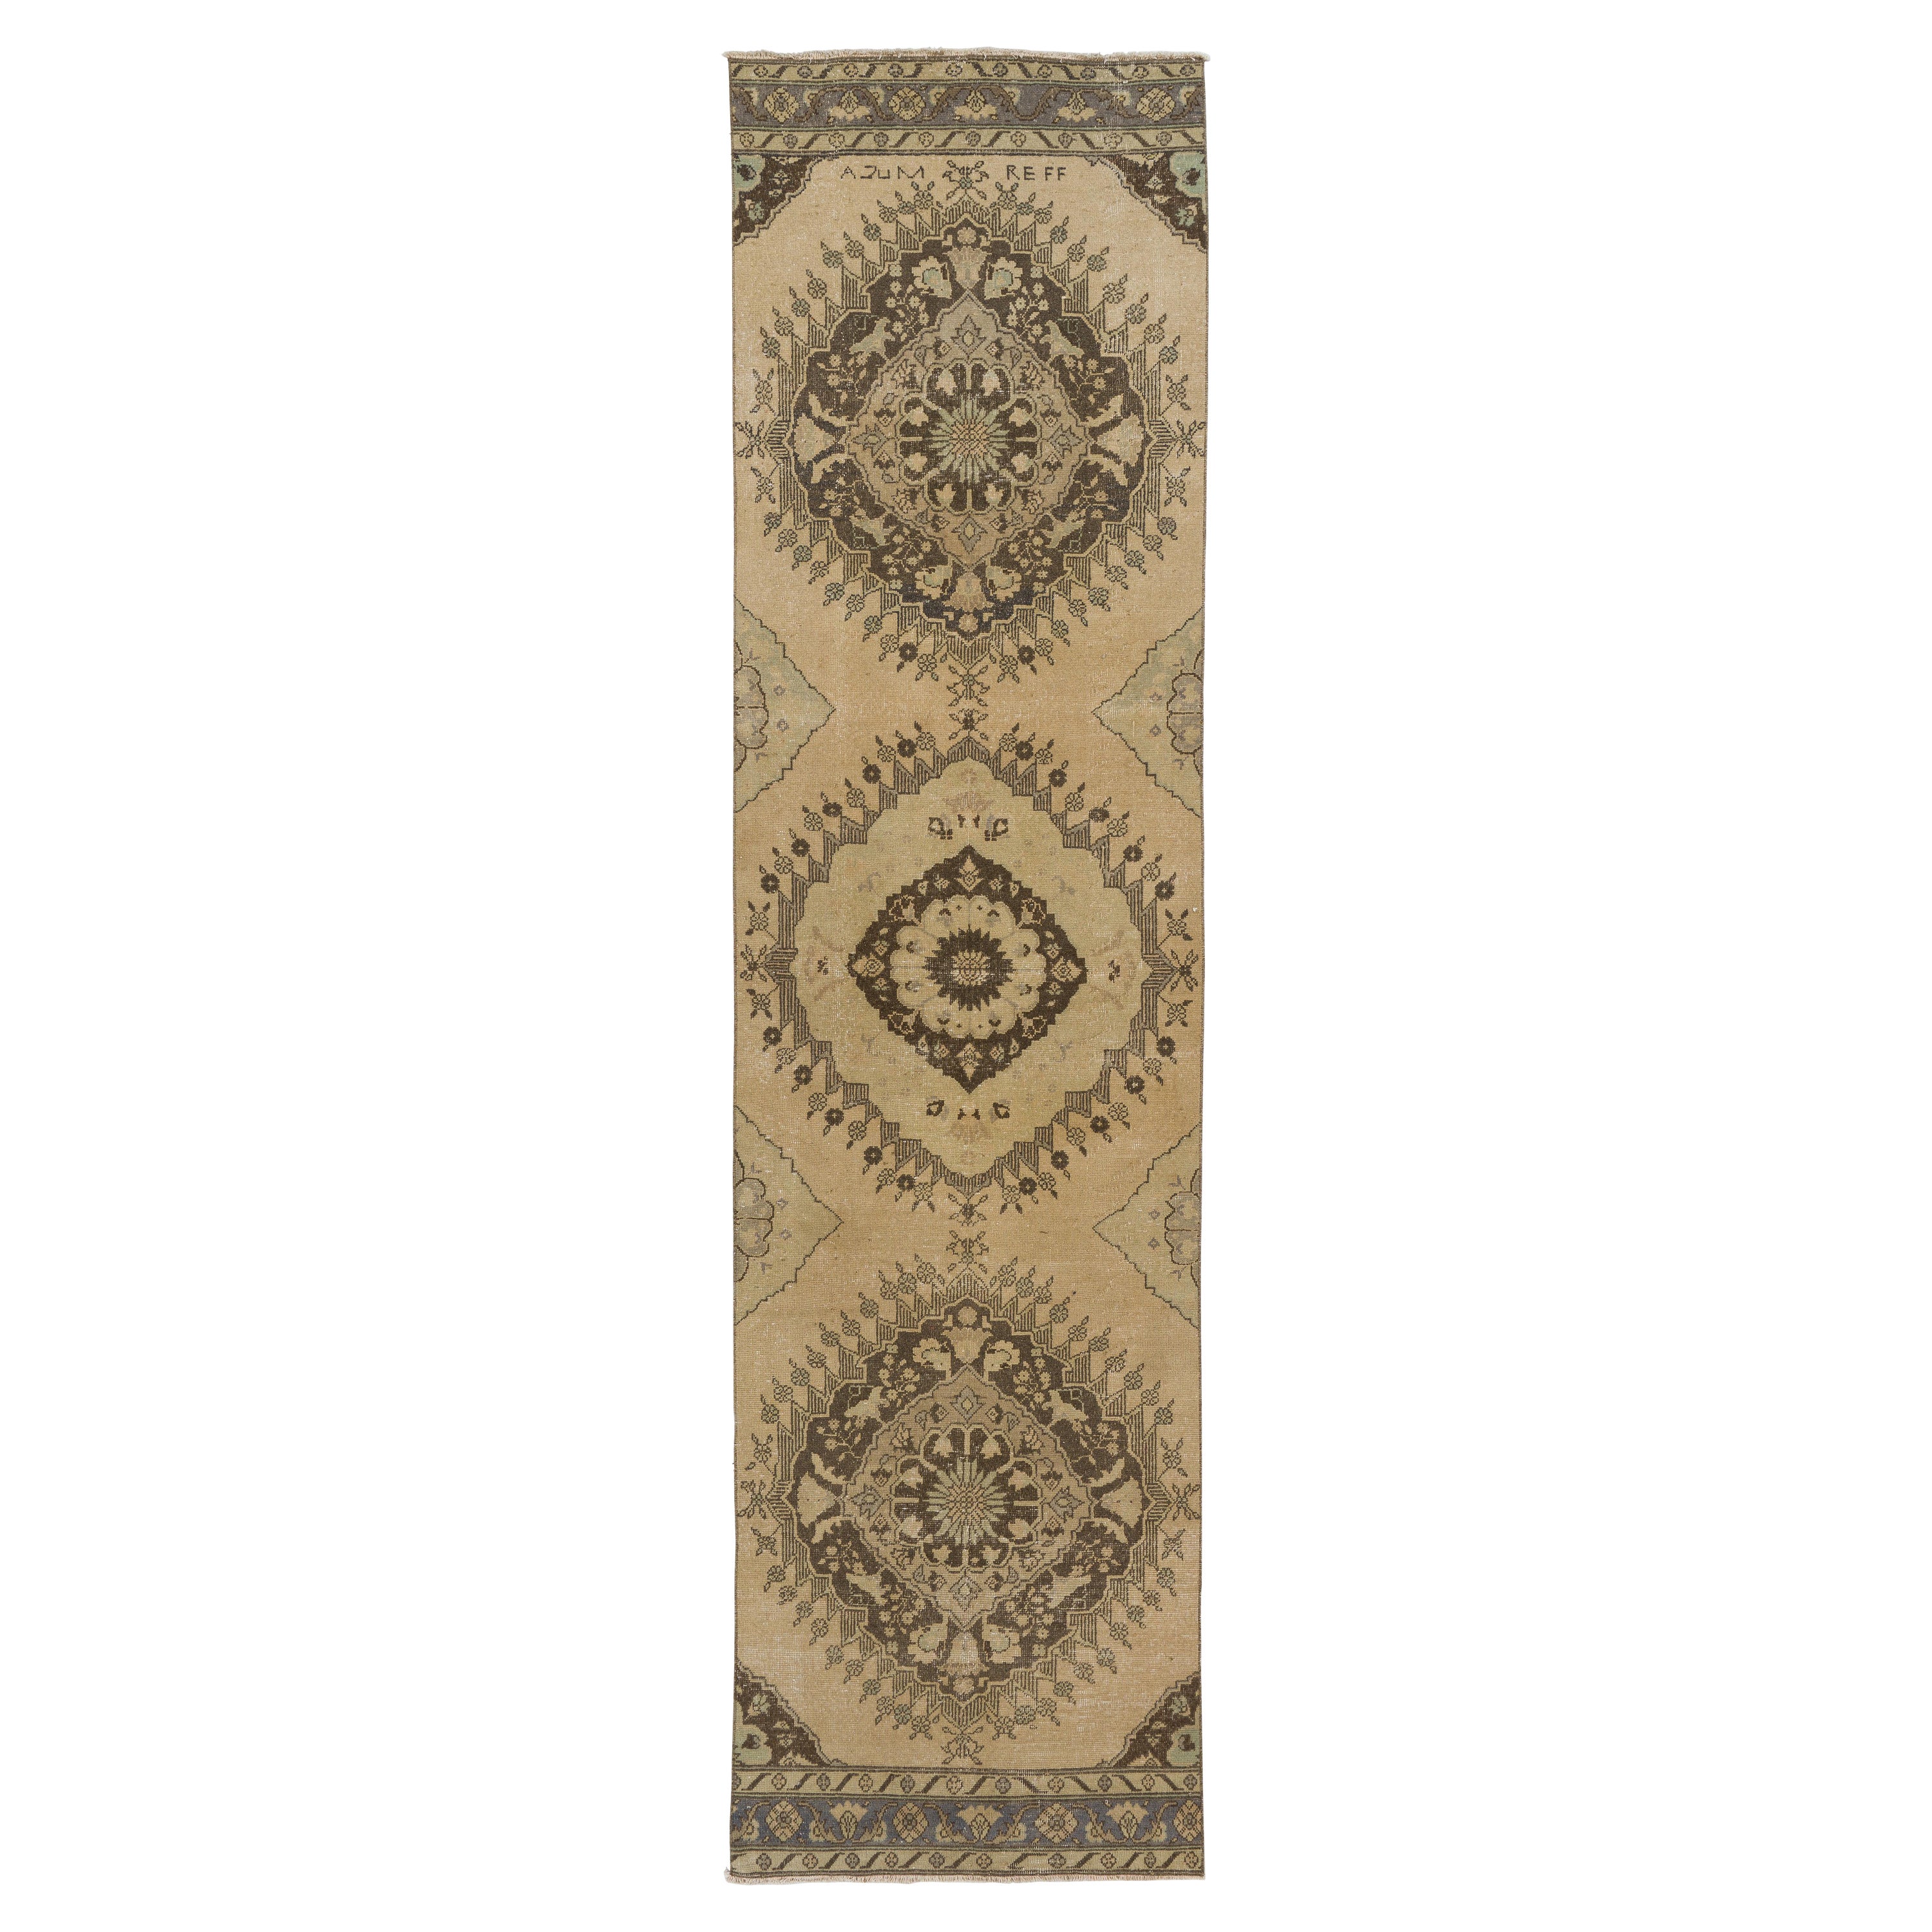 3.3x12.7 Ft Vintage Runner Rug in Beige. Handmade Anatolian Carpet for Hallway